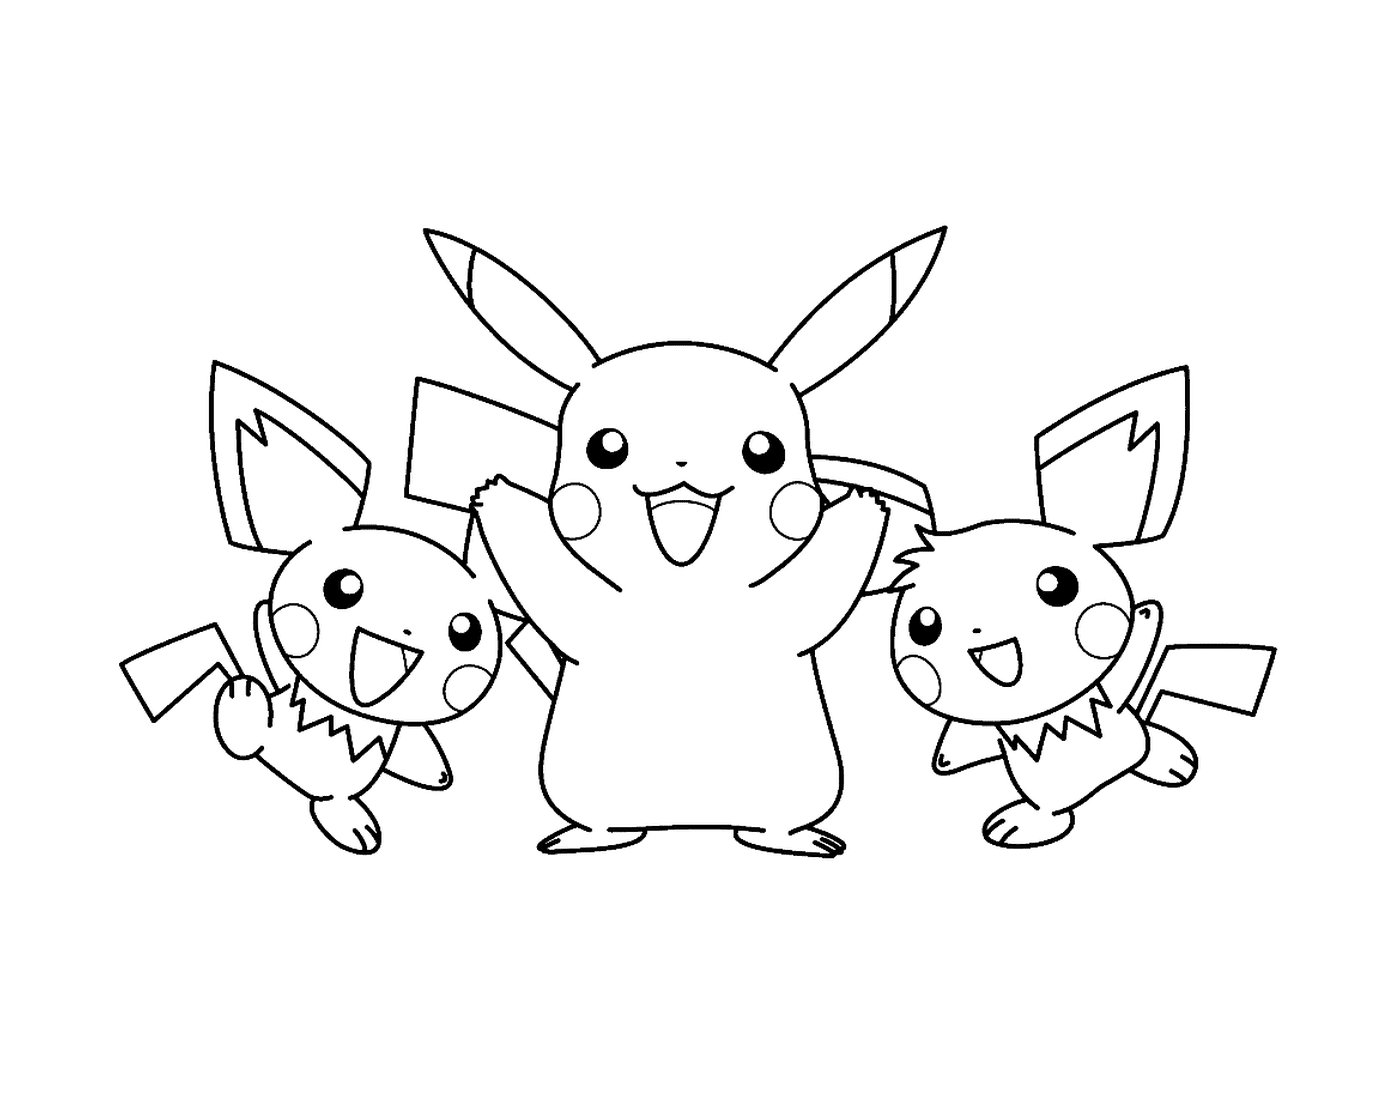  Drei Pikachus für Kinder 